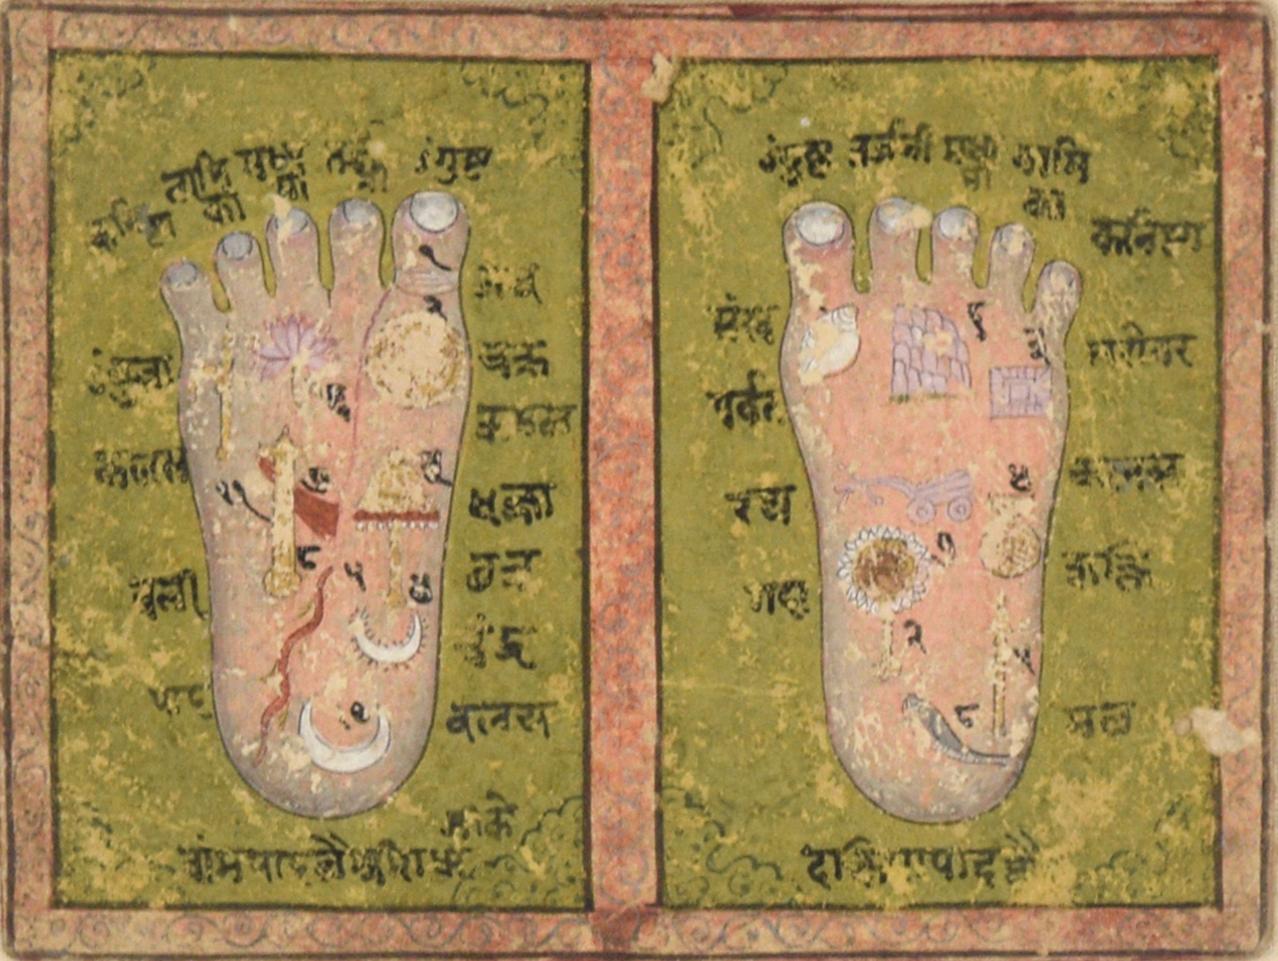 Fein detaillierte Illustration der Füße von Lord Rama. Die Füße sind mit illustrativen Symbolen beschriftet, darunter eine Lotosblume, Muscheln und Mondsicheln. Auf den Füßen befinden sich insgesamt 17 Symbole. Zarte Ranken und Muster umgeben das